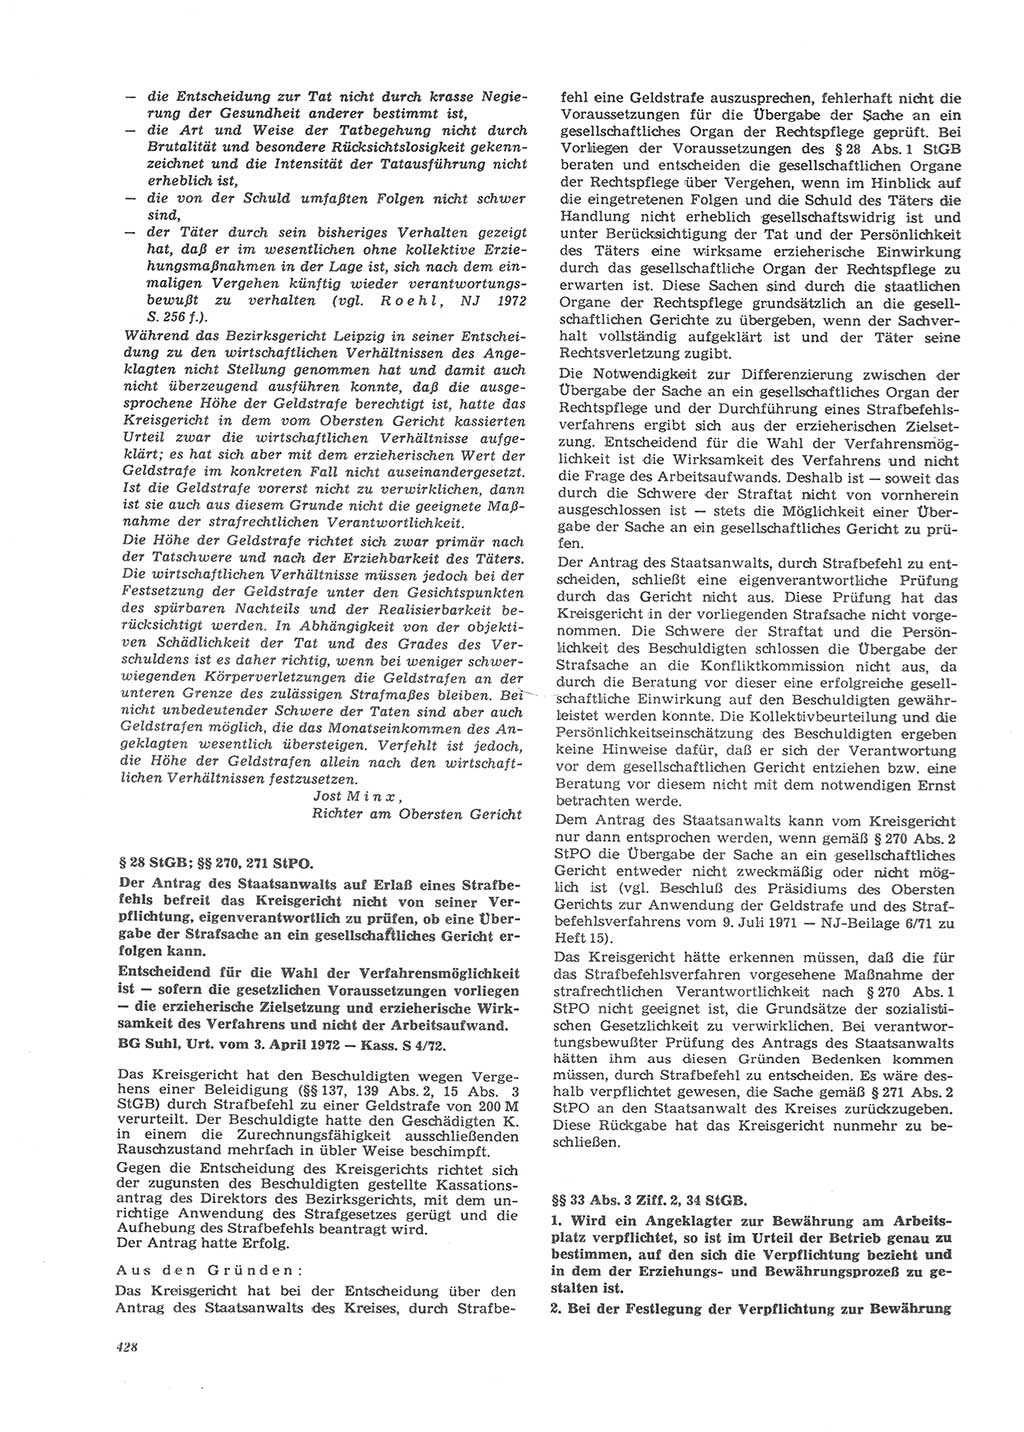 Neue Justiz (NJ), Zeitschrift für Recht und Rechtswissenschaft [Deutsche Demokratische Republik (DDR)], 26. Jahrgang 1972, Seite 428 (NJ DDR 1972, S. 428)